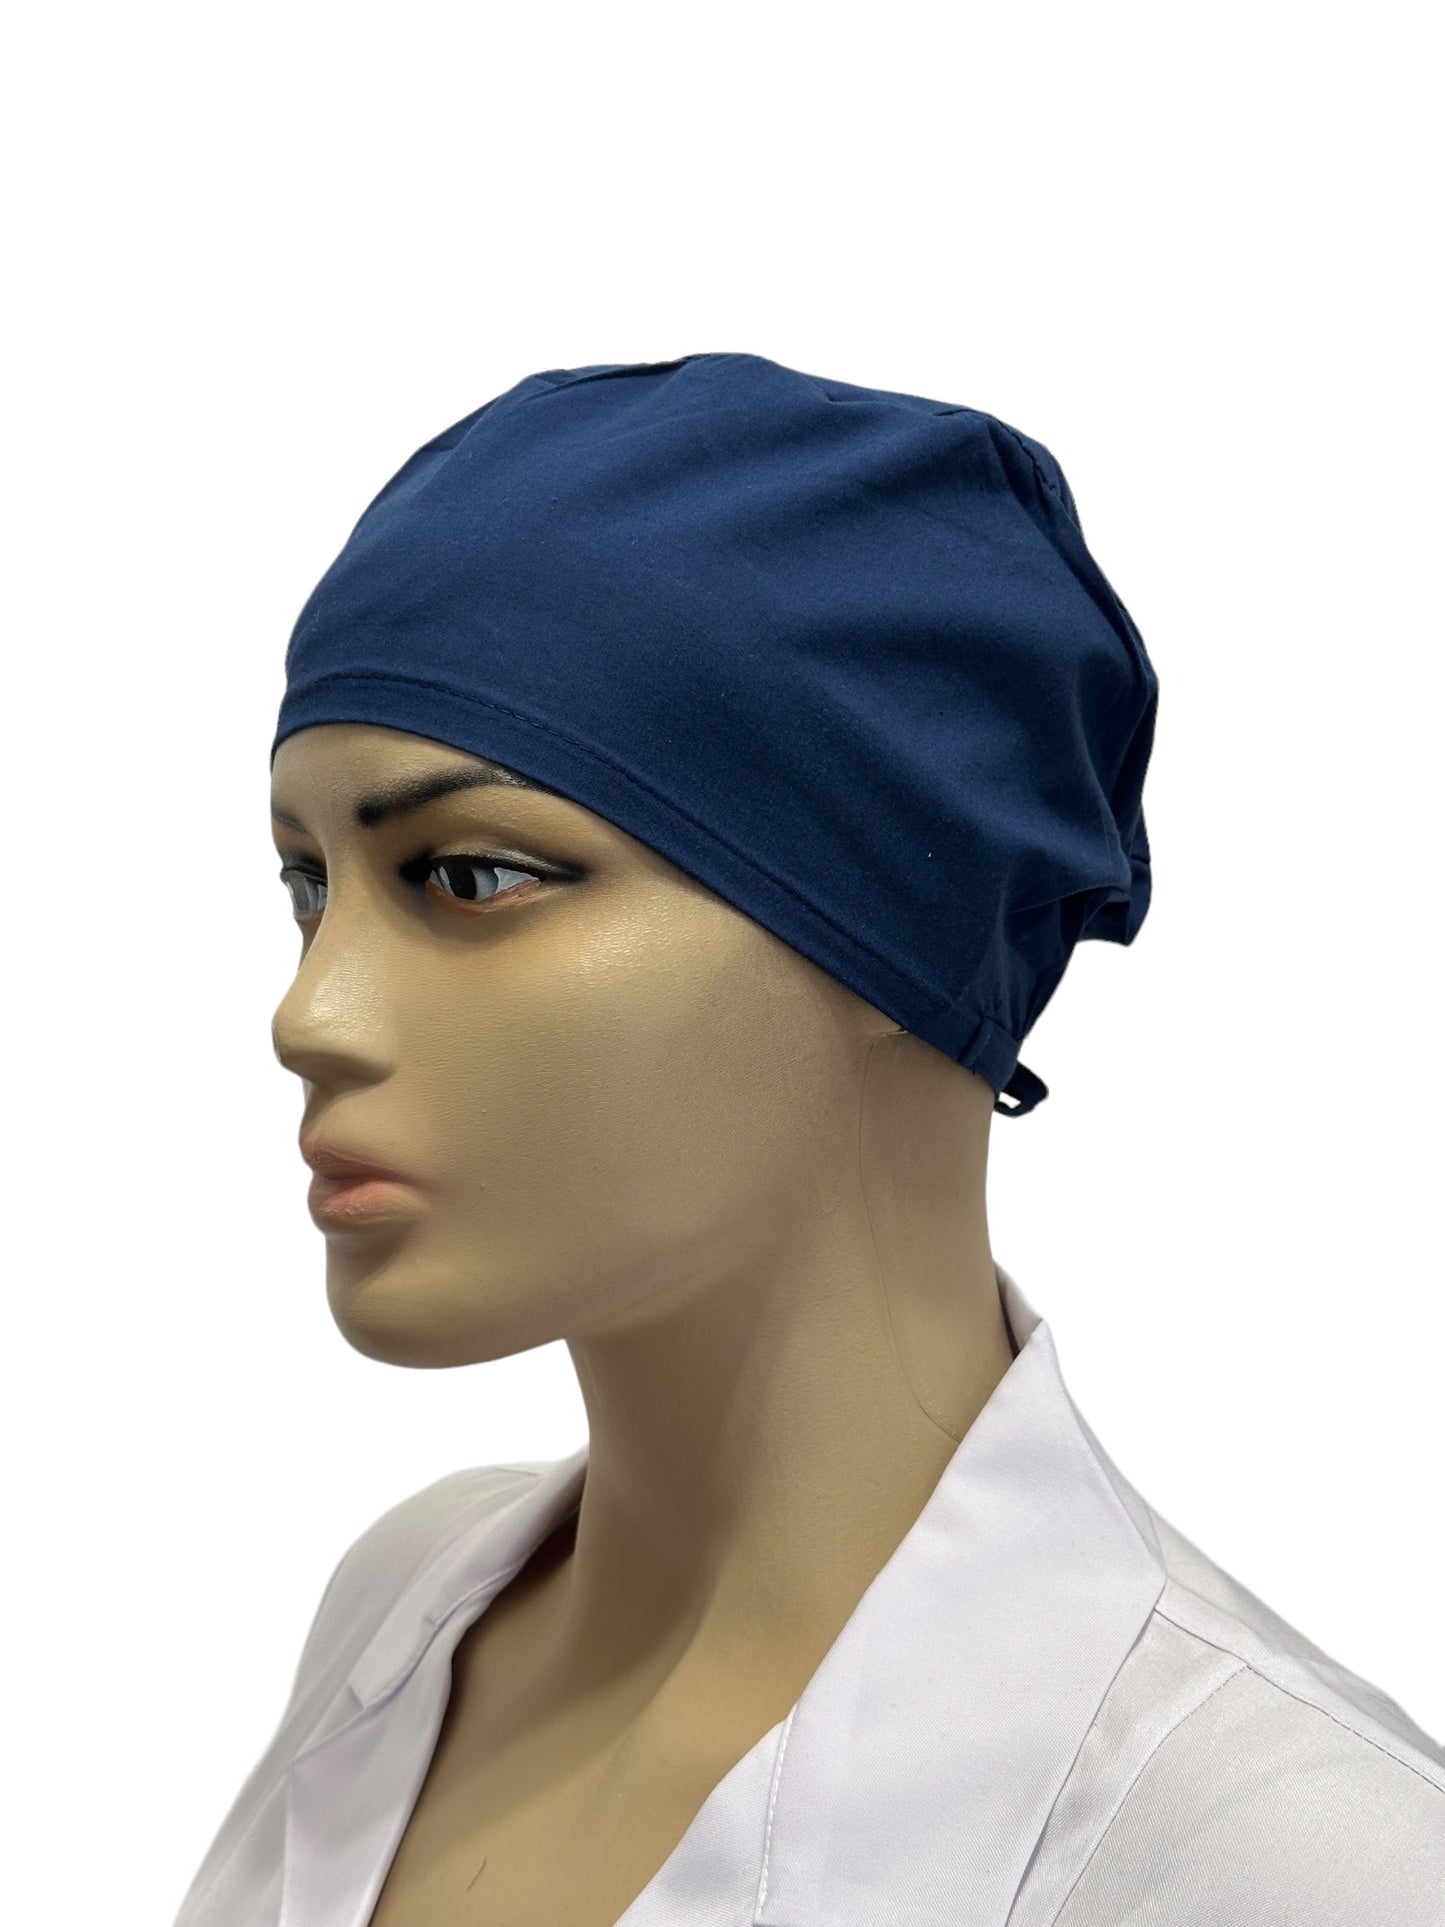 Indigo blue unisex medical cap